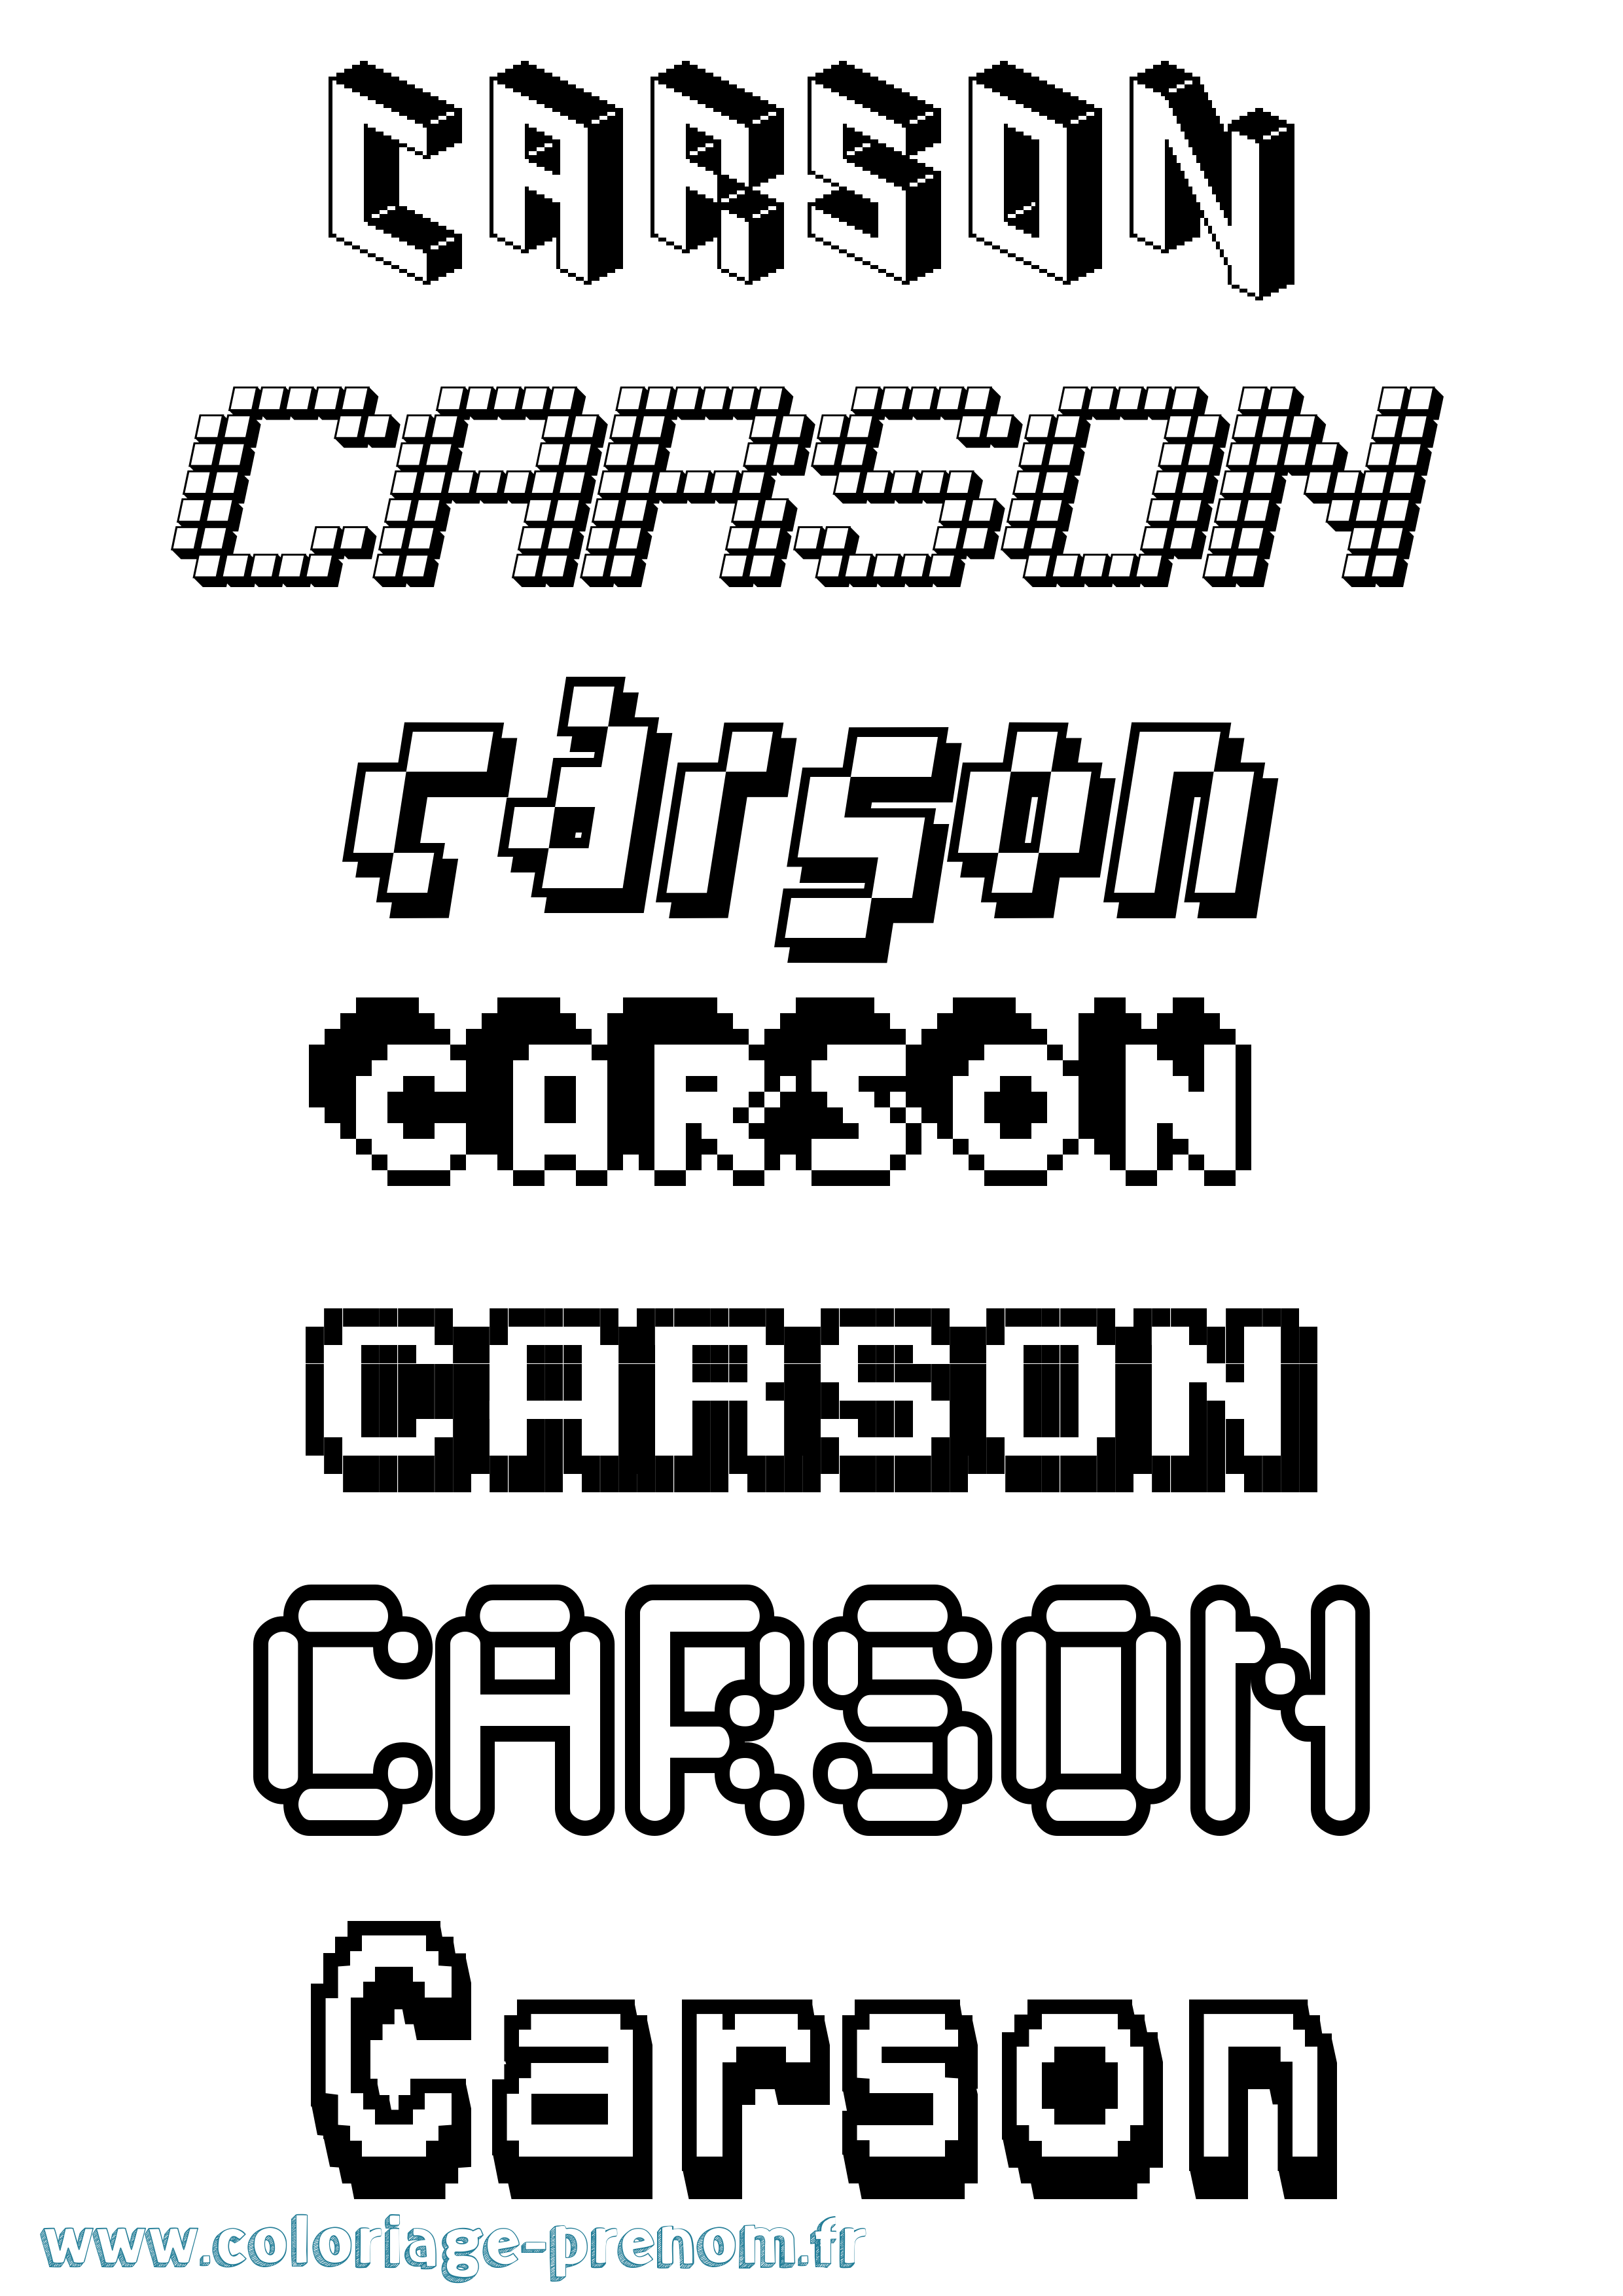 Coloriage prénom Carson Pixel